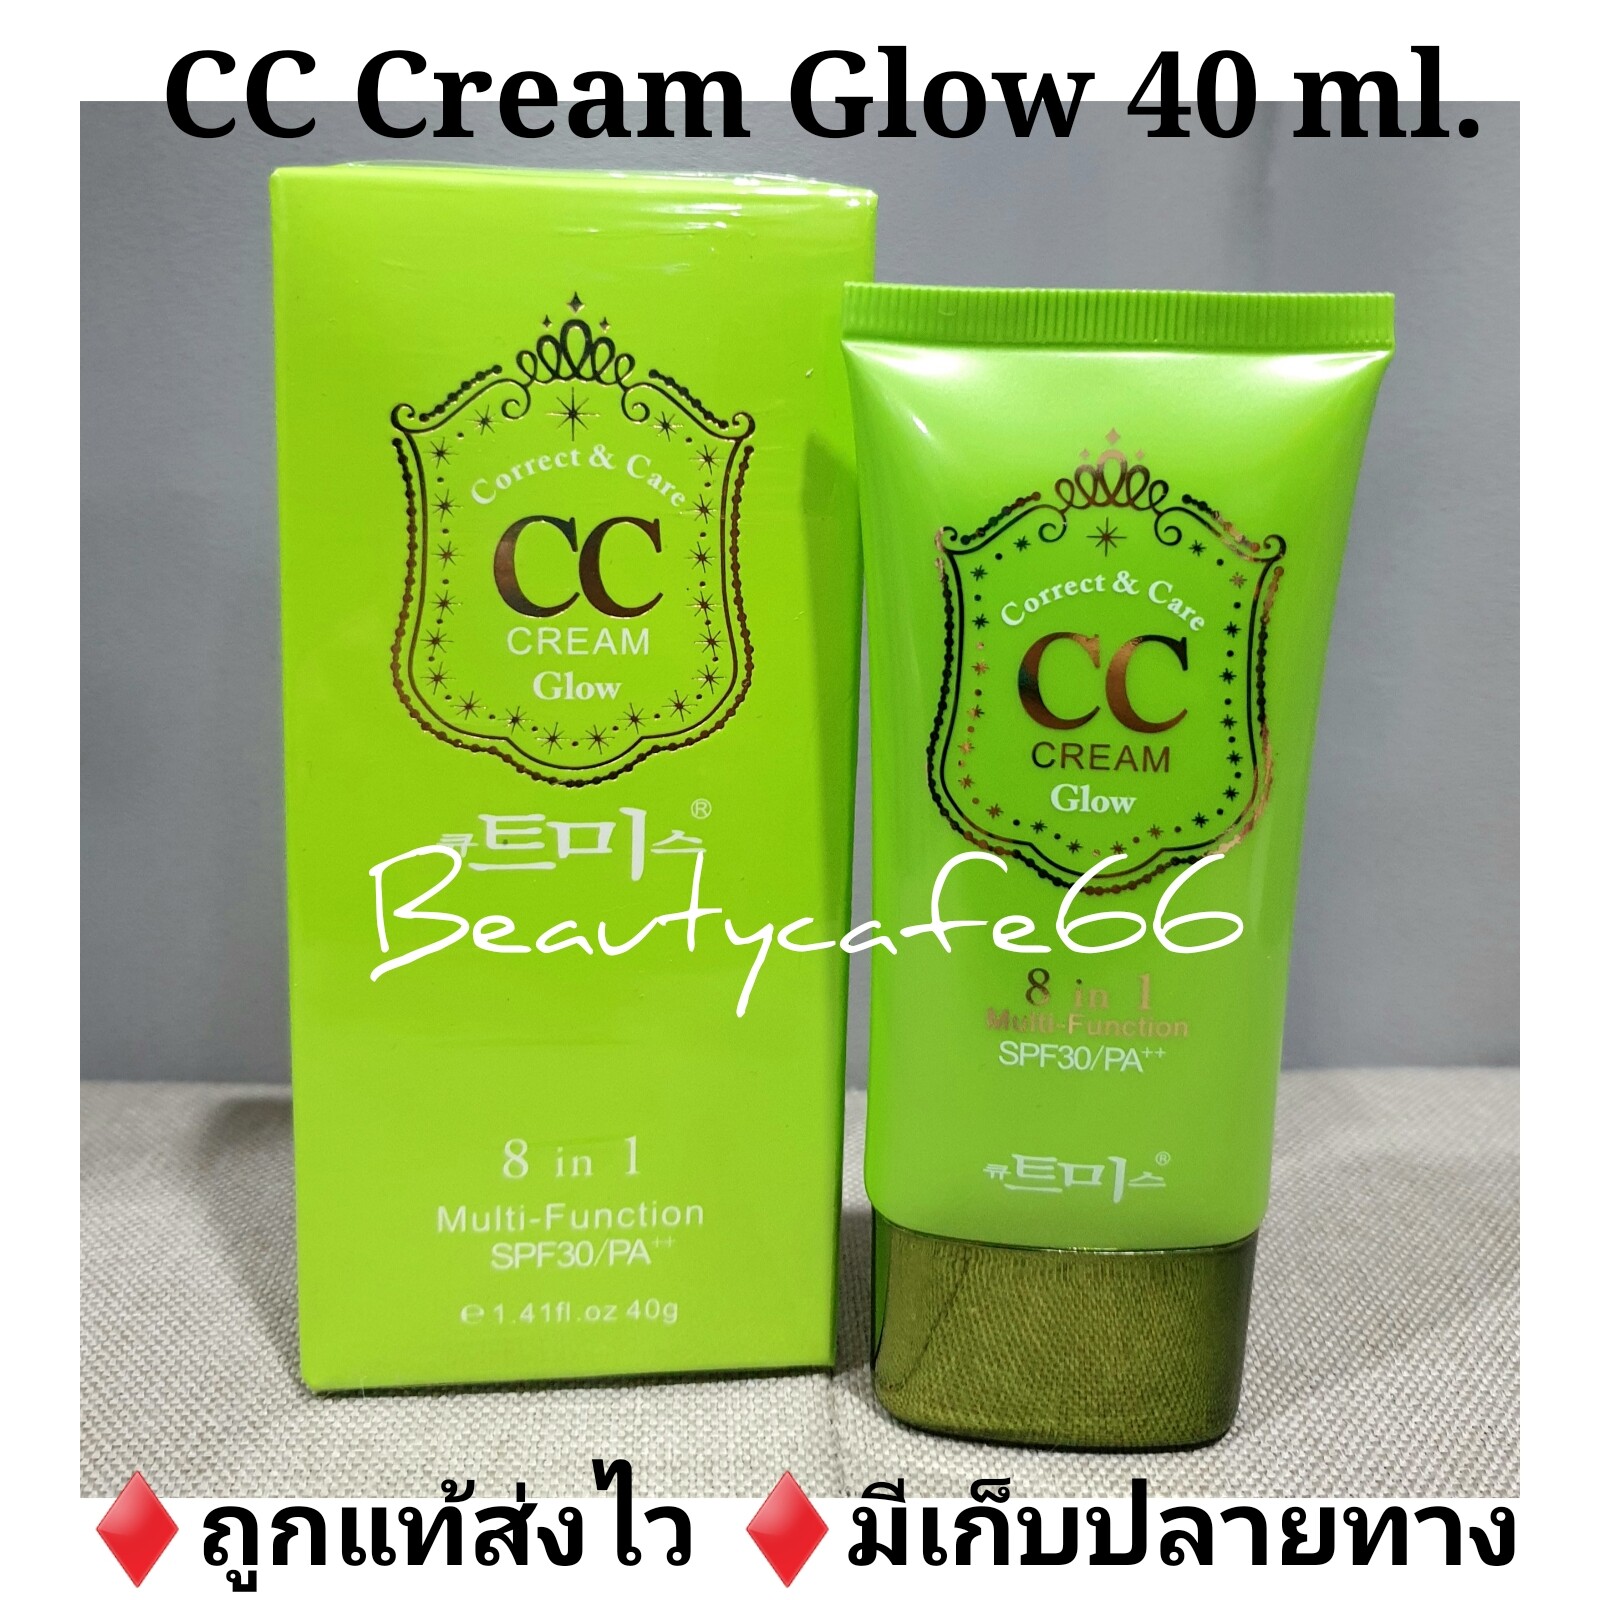 (มี 2 รุ่น) CC Skin Care CC Cream ซีซีเกาหลี สีเขียว 40 ml. Green Base เบสเขียว บีลอฟ belov